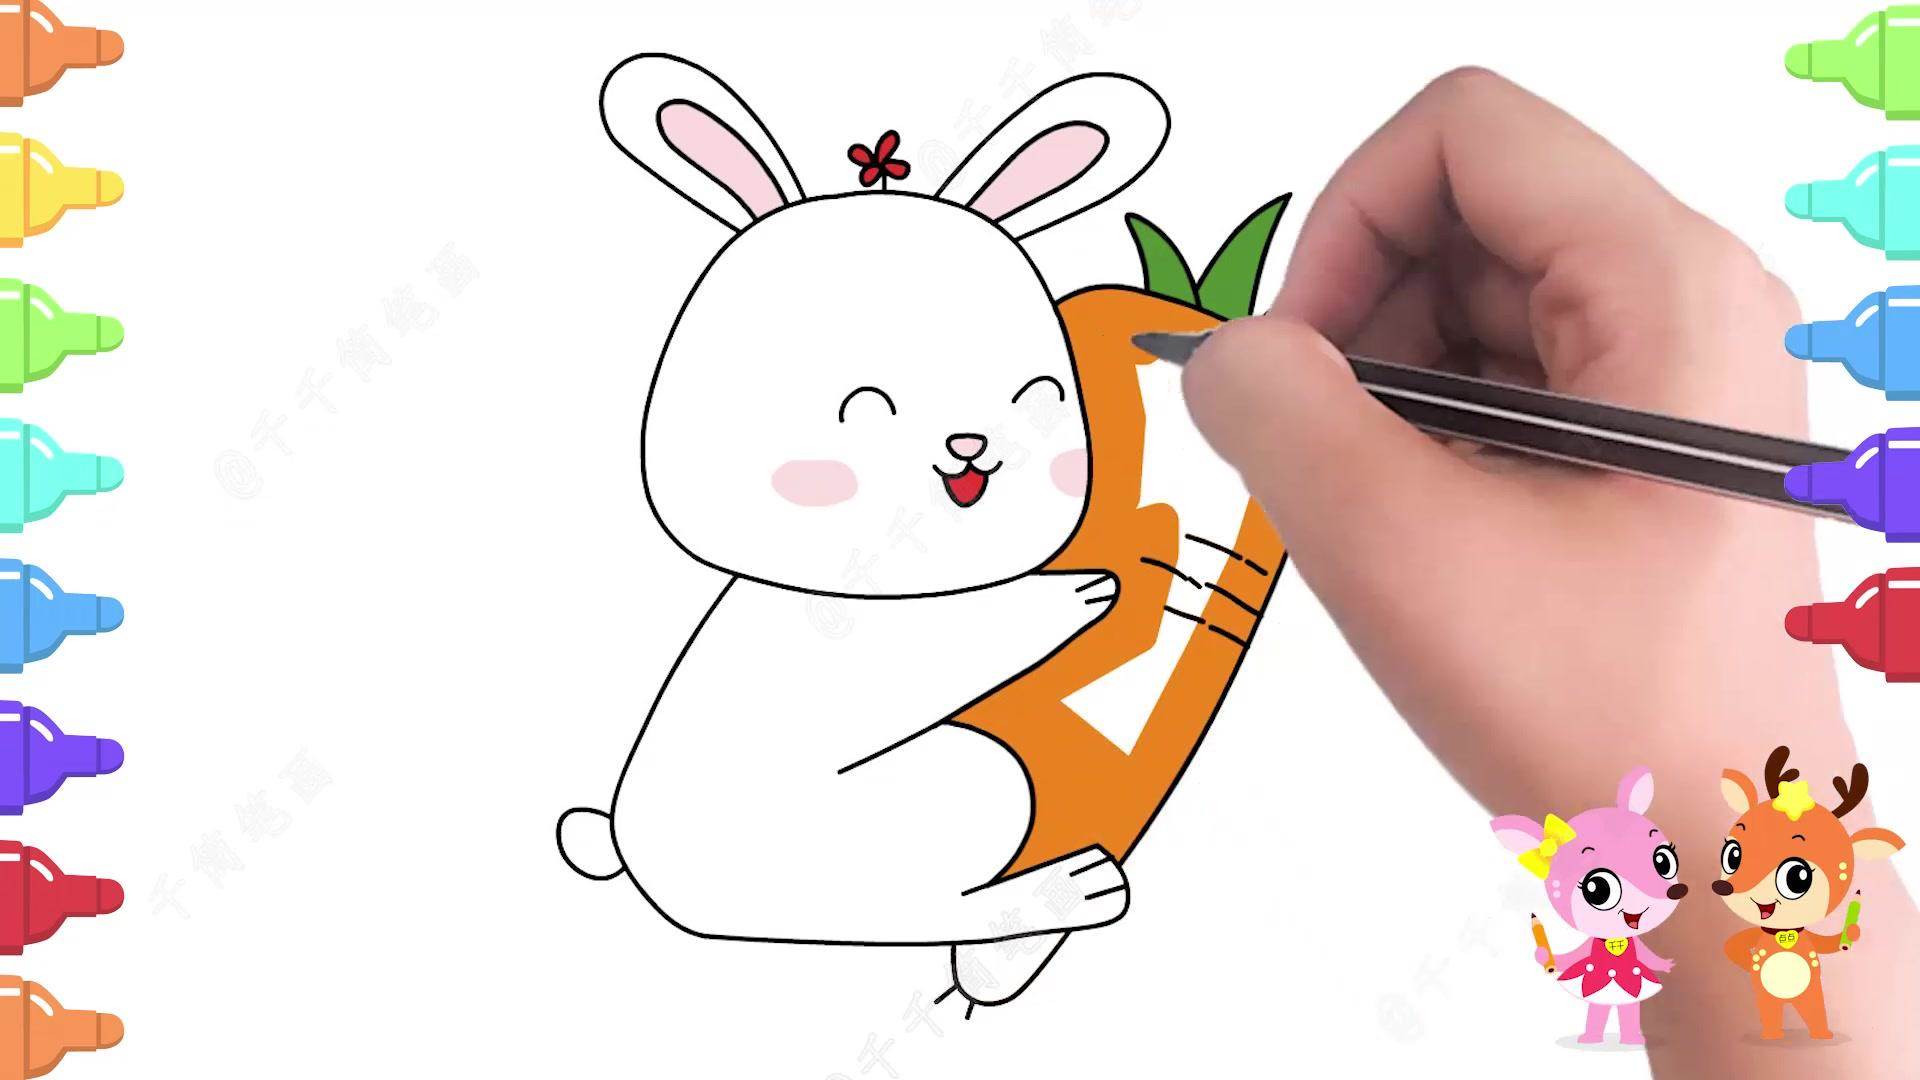 卡通兔子怎么画动漫图片